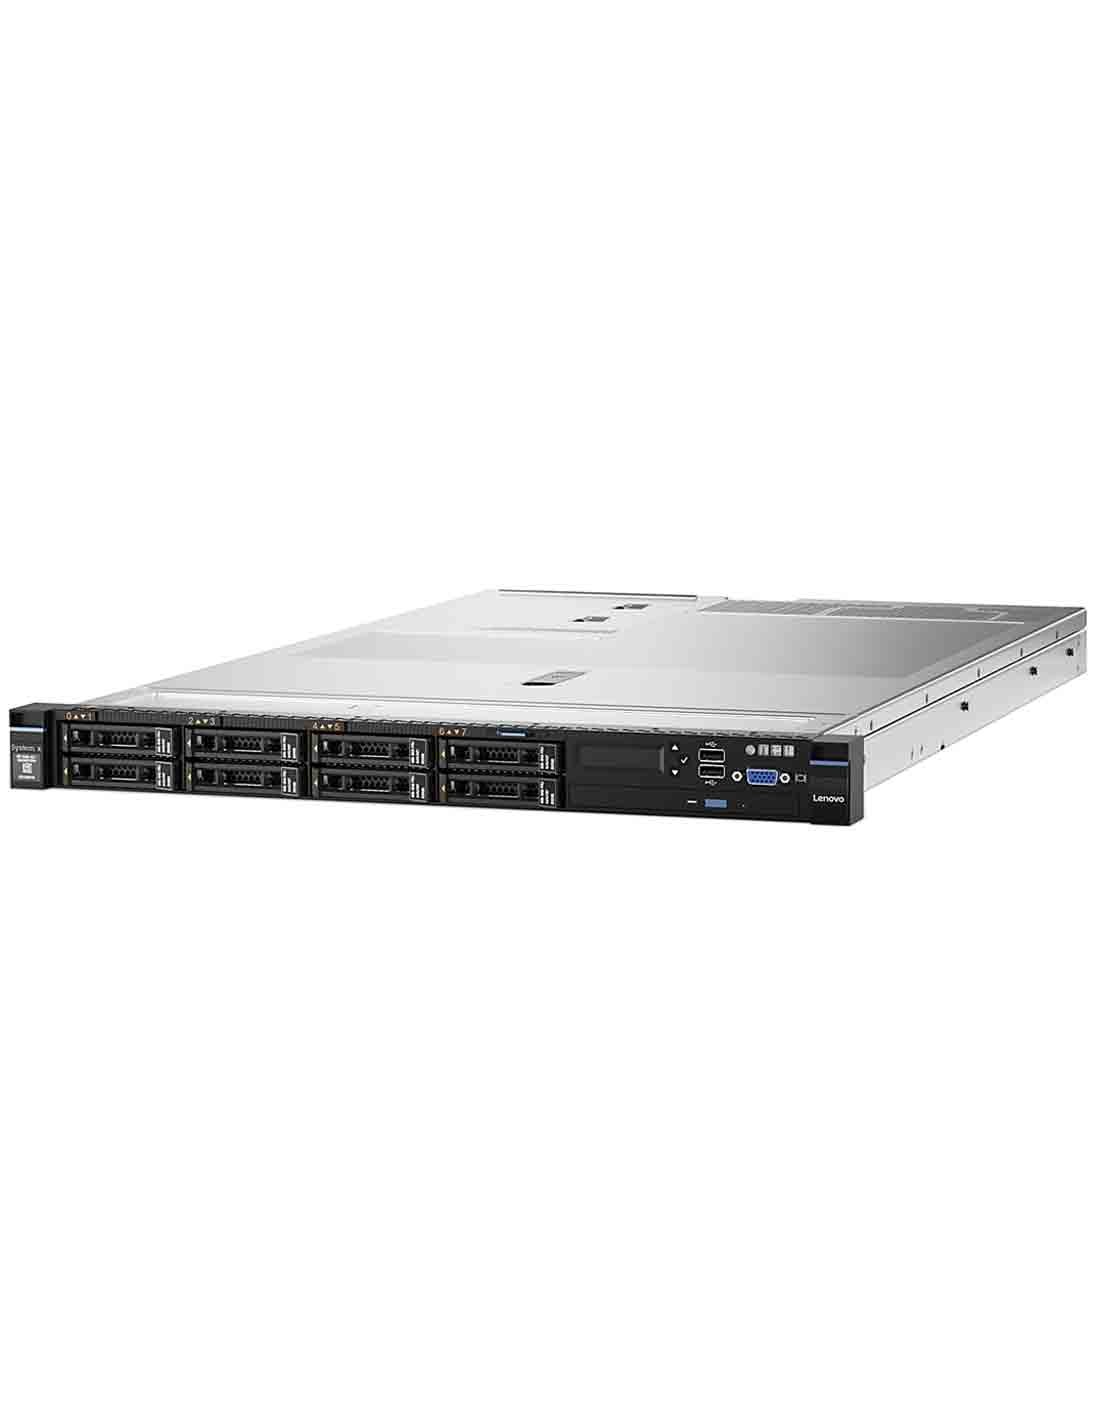 Lenovo x3550 M5 Rack Server E5-2620 v4 8869ENG at a Cheap Price in Dubai